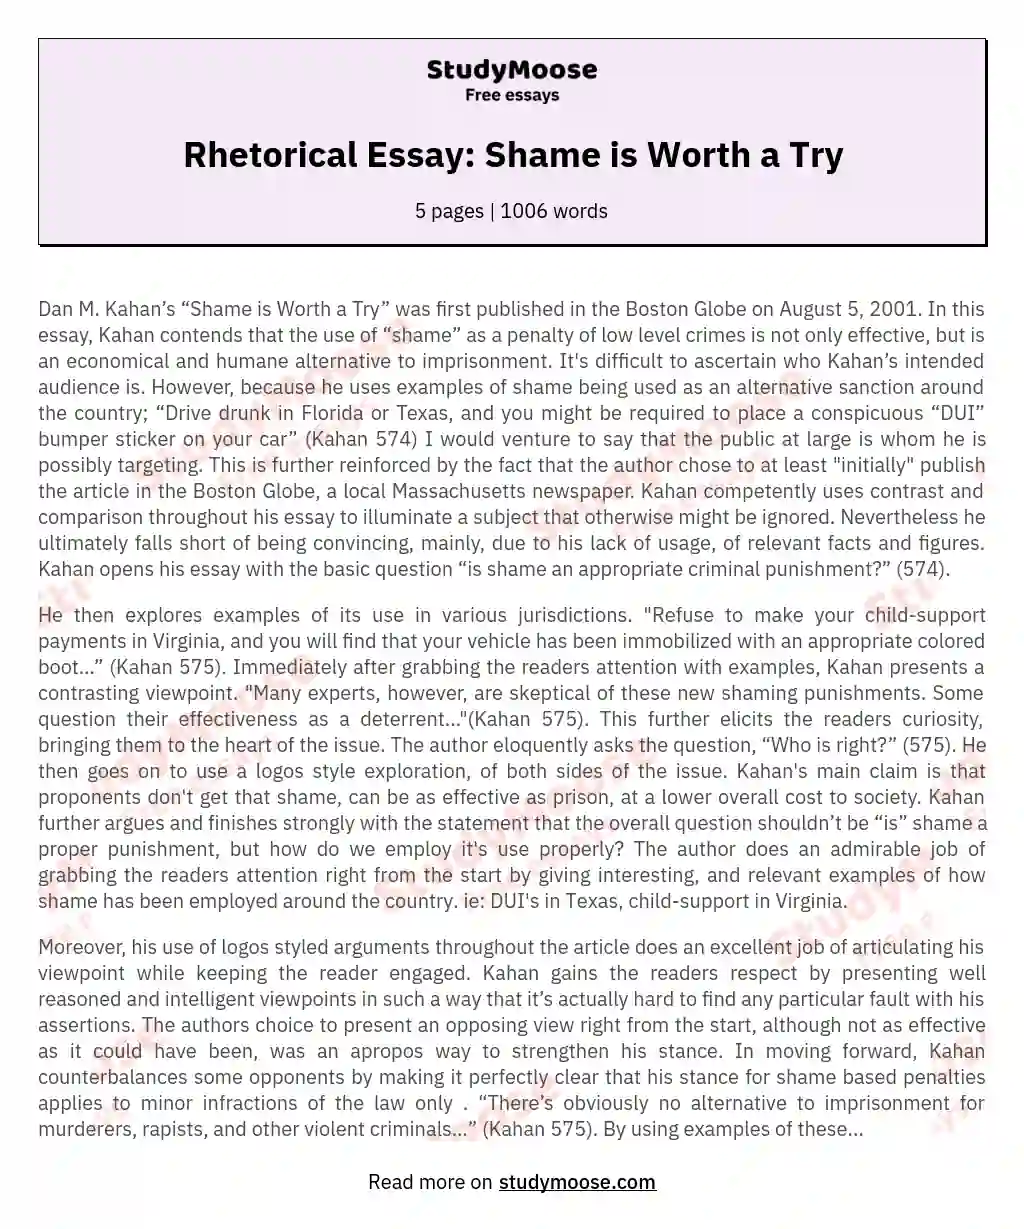 Rhetorical Essay: Shame is Worth a Try